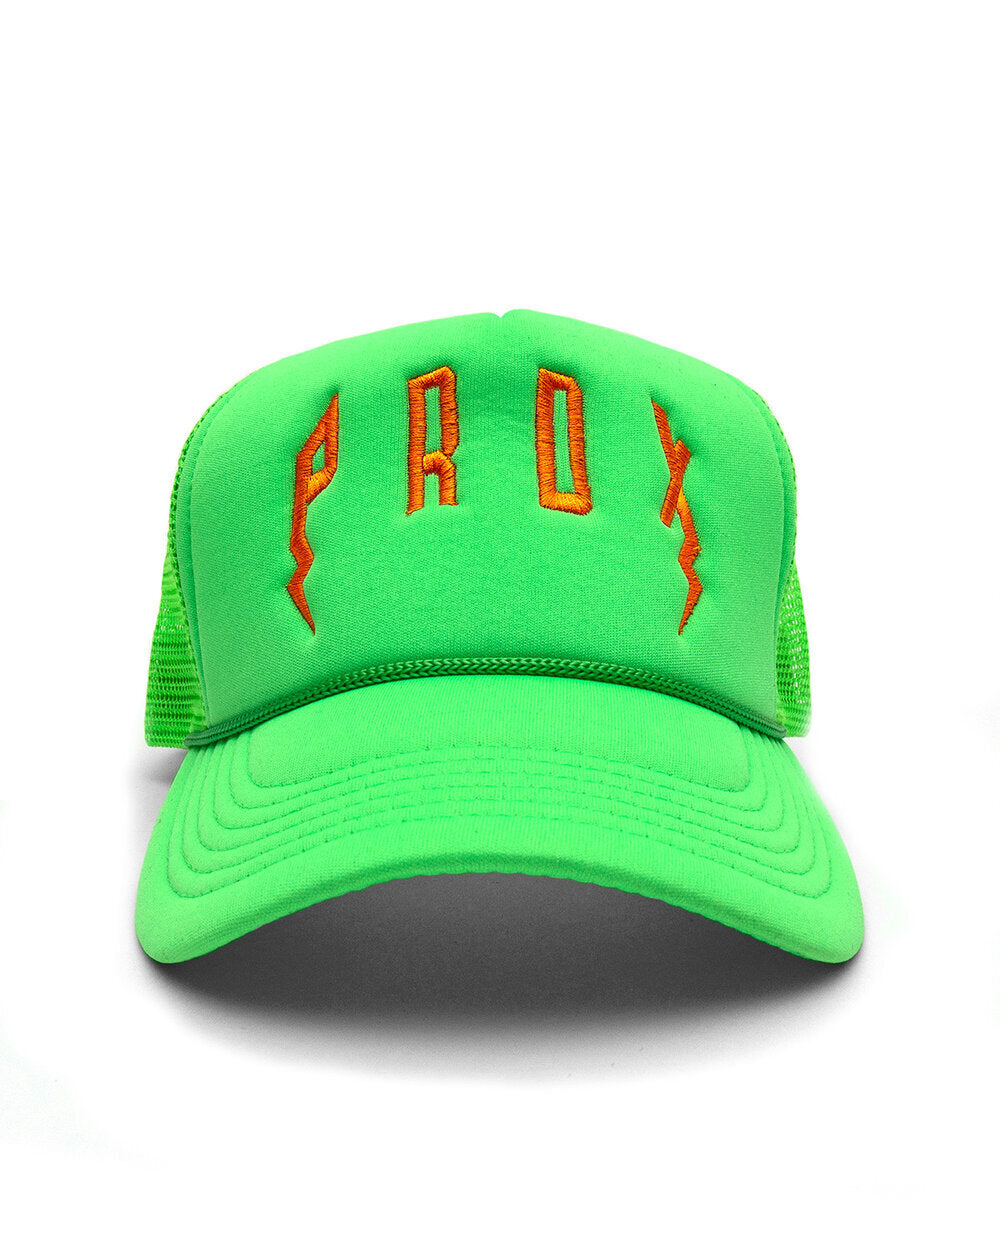 PRDX TRUCKER HAT (GREEN/GREEN/ORANGE) – Paradox Lab